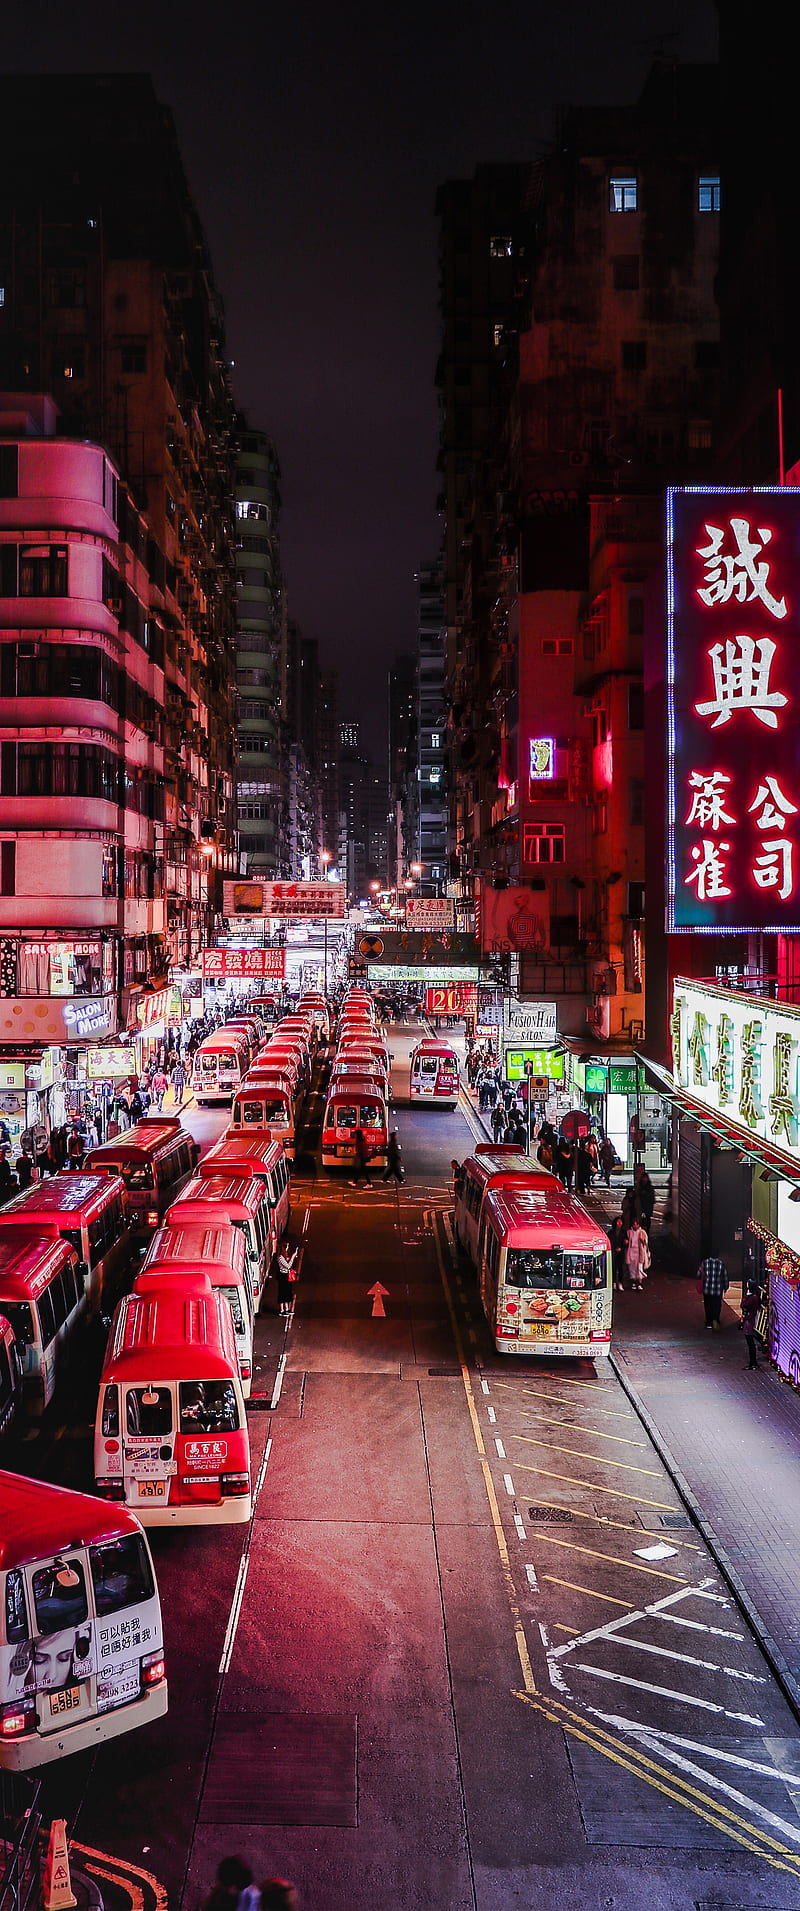 Phố đêm Hồng Kông là một trong những trải nghiệm không thể bỏ lỡ khi đến thành phố này. Làm việc, mua sắm, ăn uống và giải trí cả đều có thể được thực hiện khi màn đêm buông xuống. Hãy chìm đắm trong vô số ánh đèn neon chói lọi và thưởng thức những hình ảnh phố đêm đang chờ đón bạn.